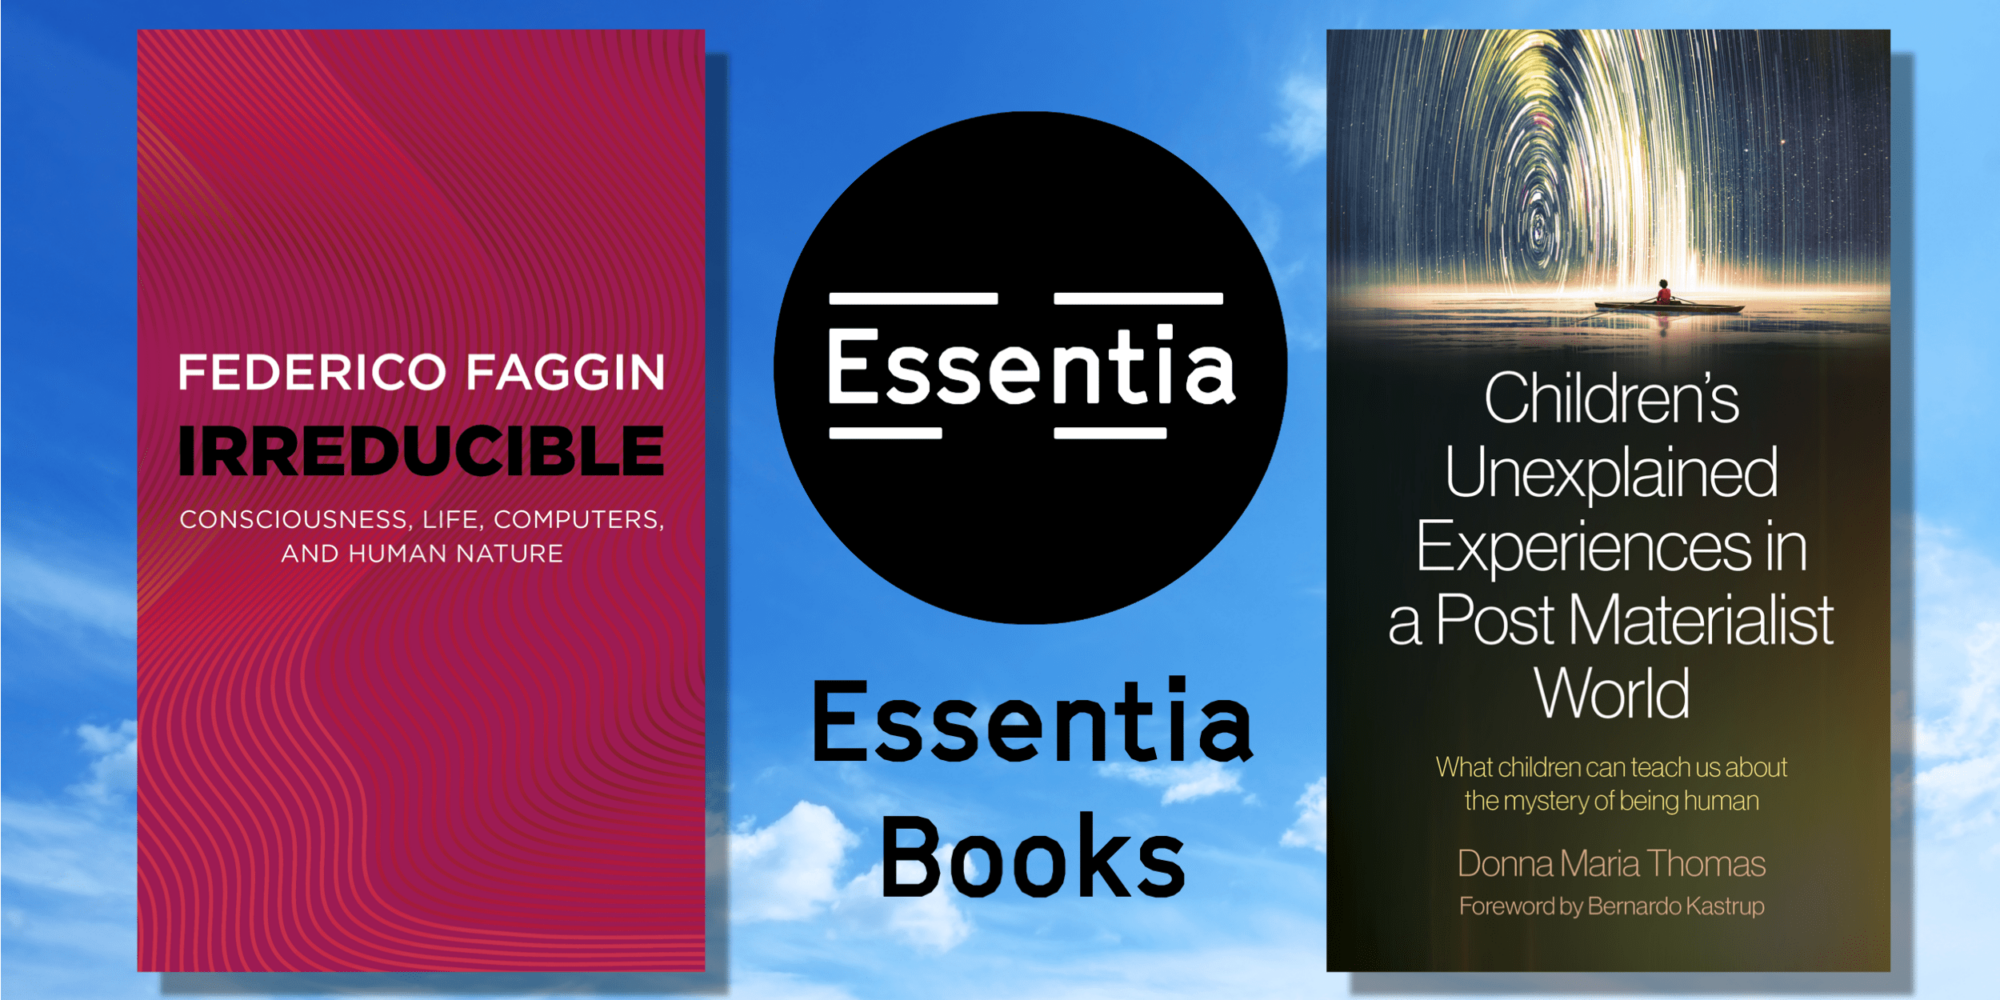 Essentia Books